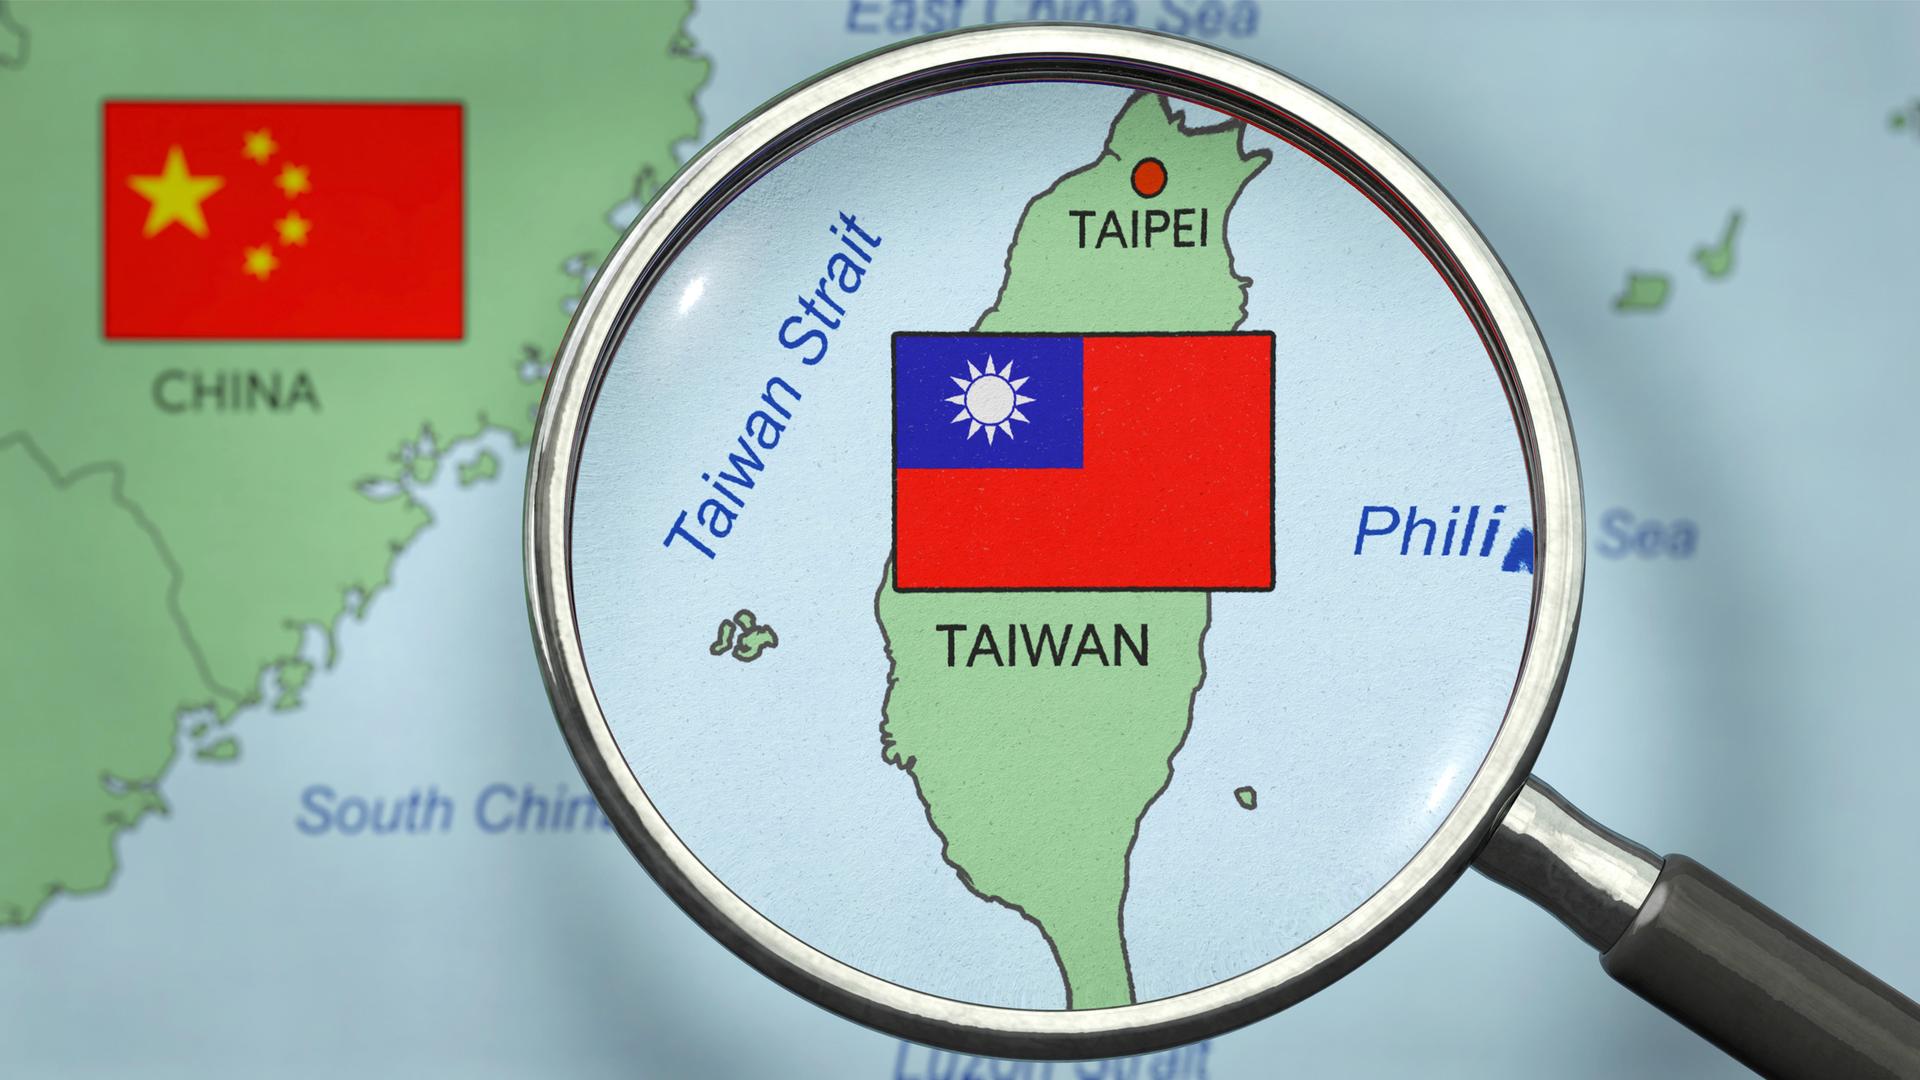 Die Grafik zeigt eine Lupe über einer Landkarte, auf der Taiwan und ein Teil China sowie die Flaggen beider Staaten zu sehen sind. Die Lupe vergrößert Taiwan und die Taiwanstraße.